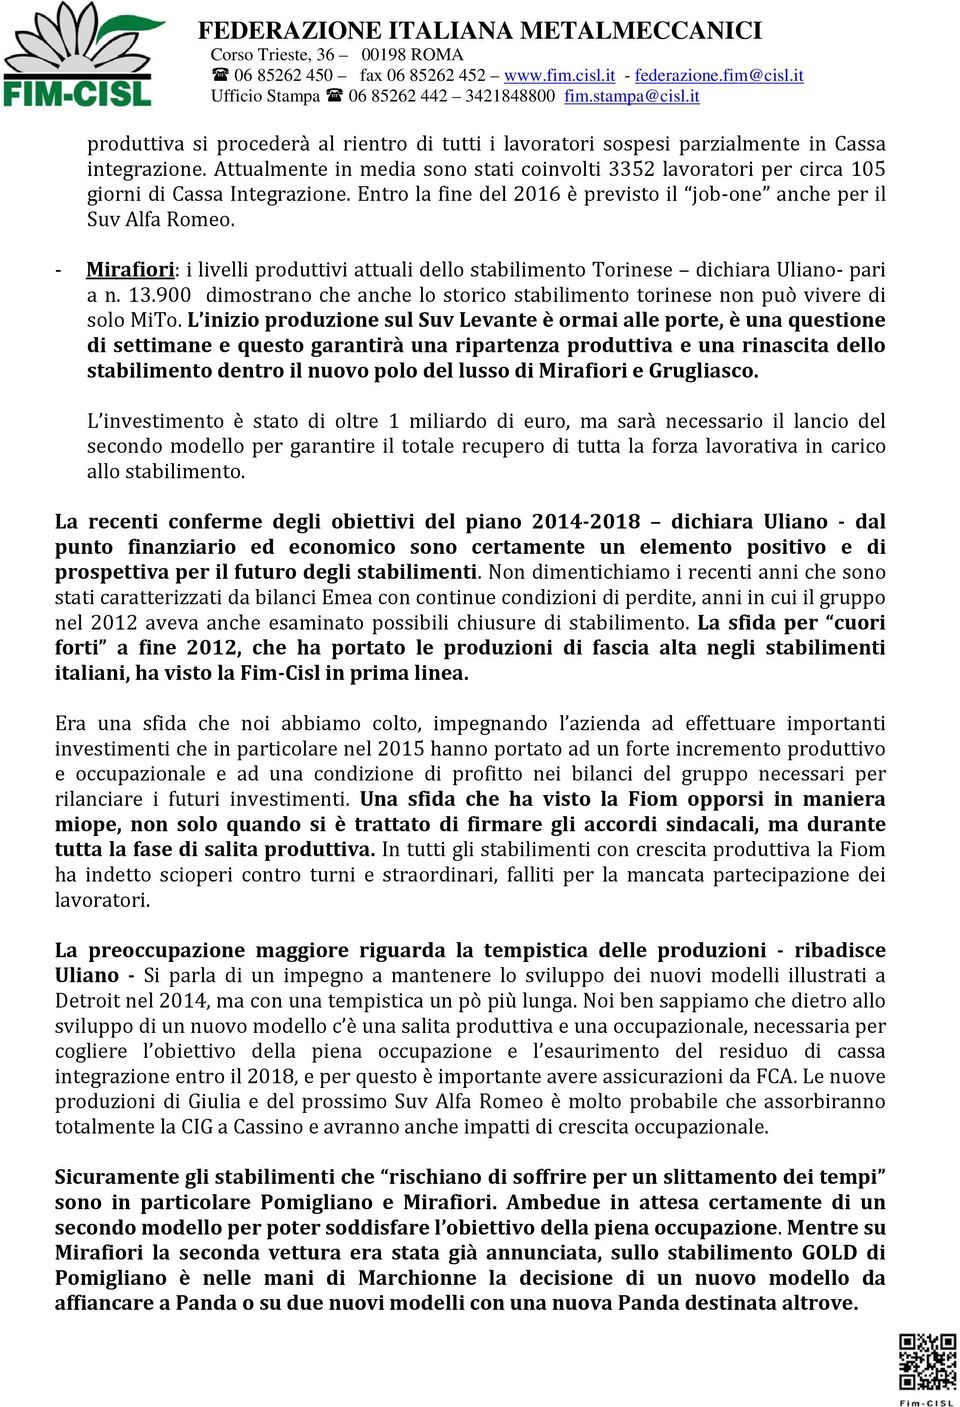 - Mirafiori: i livelli produttivi attuali dello stabilimento Torinese dichiara Uliano- pari a n. 13.900 dimostrano che anche lo storico stabilimento torinese non può vivere di solo MiTo.